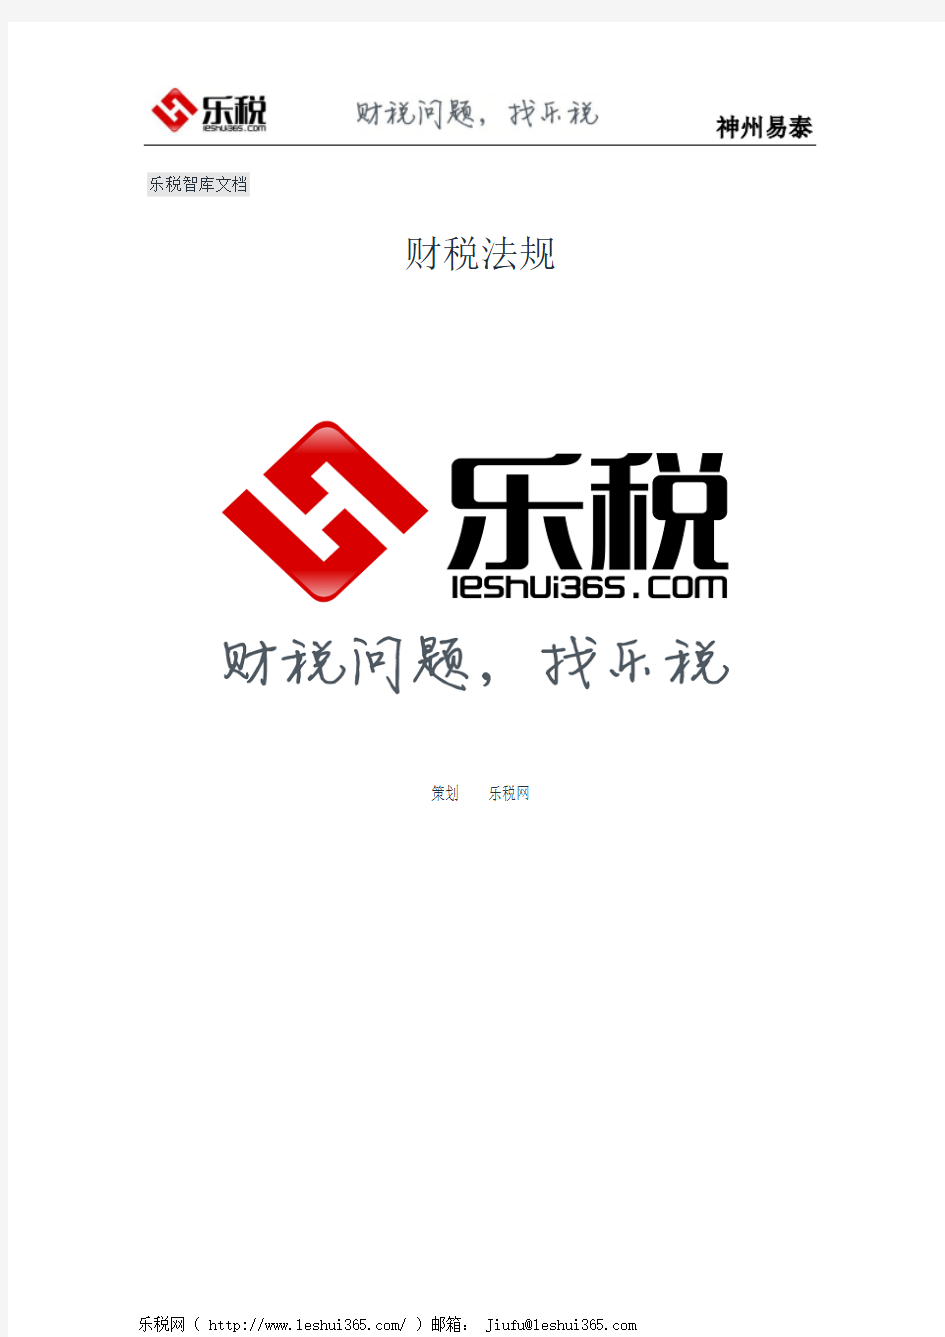 上海市国家税务局上海市地方税务局关于发布《上海市重大税务案件